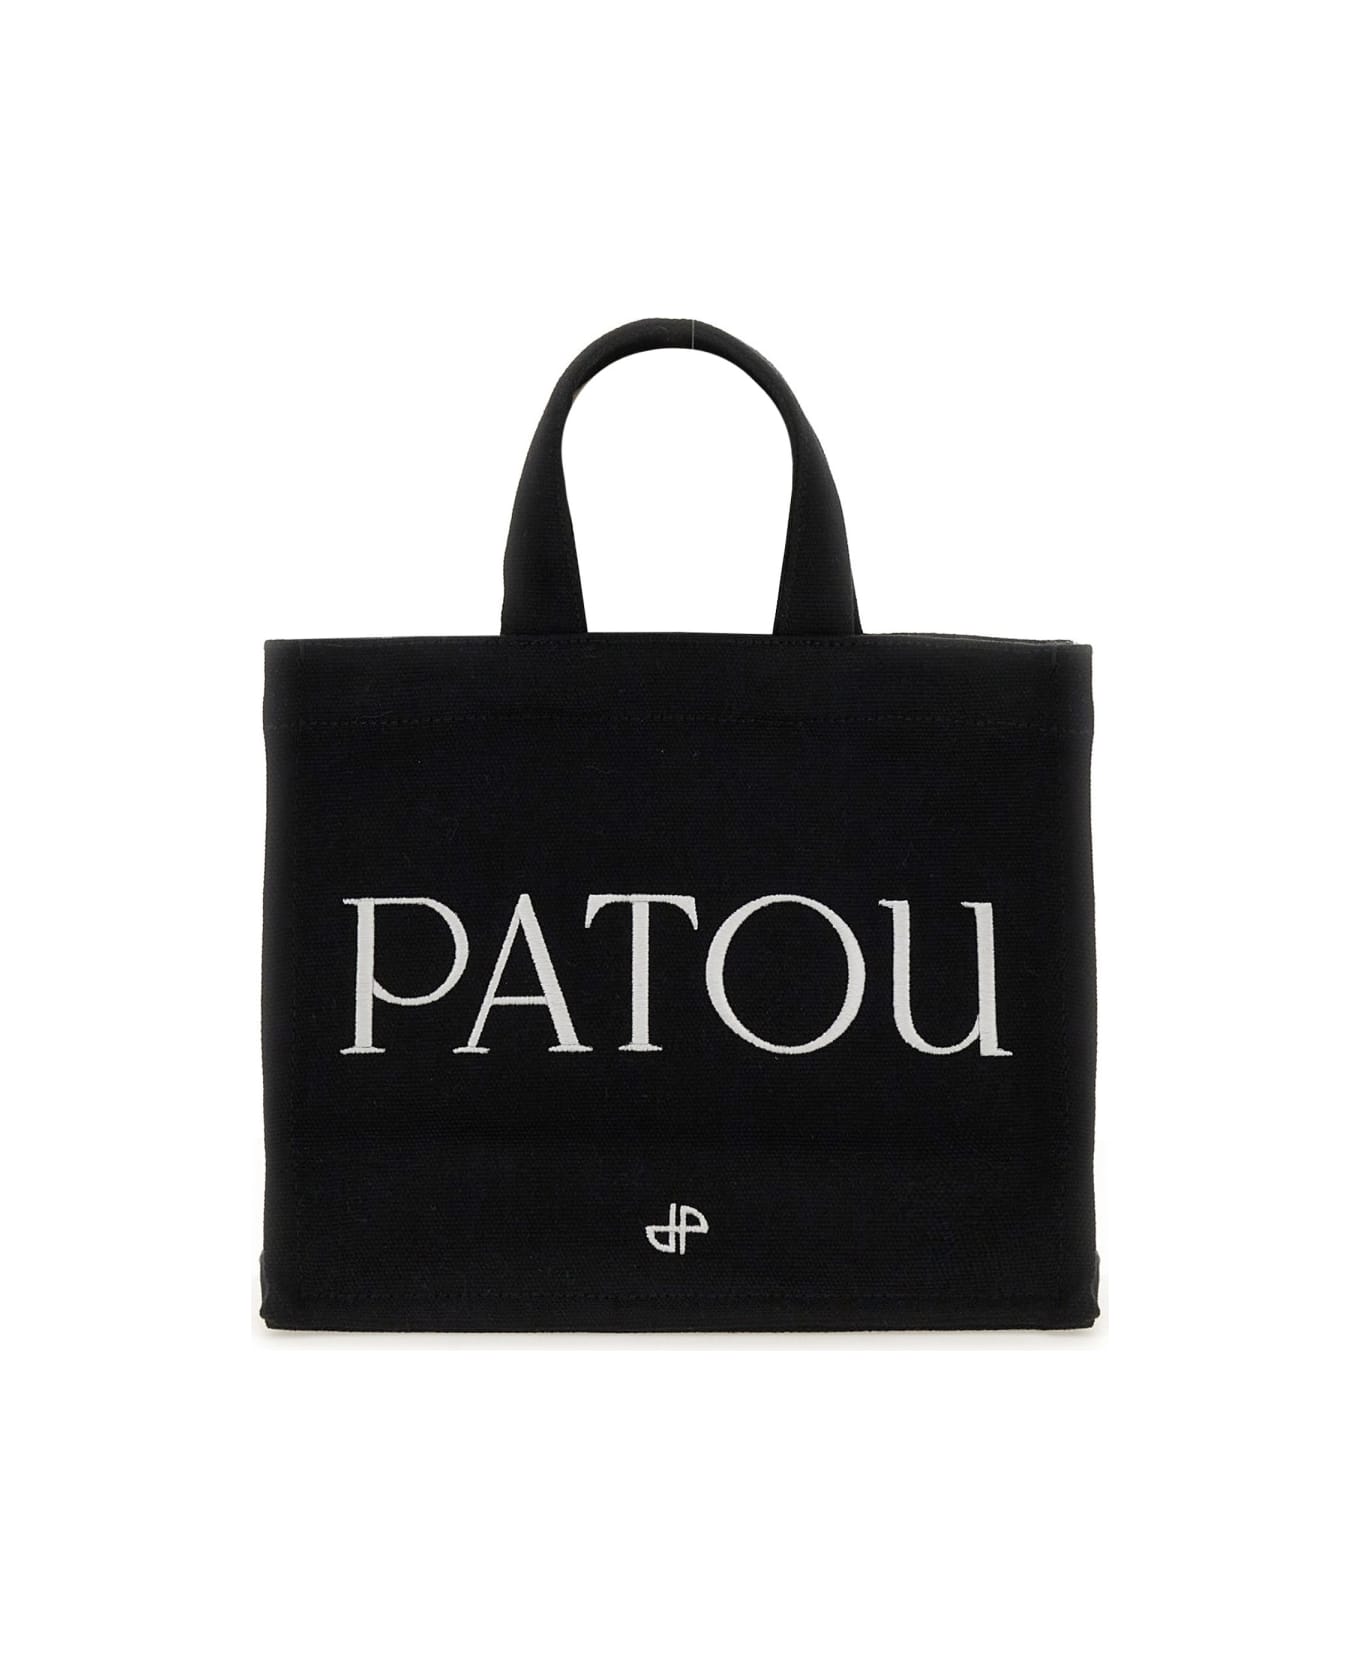 Patou Small "patou" Tote Bag - BLACK